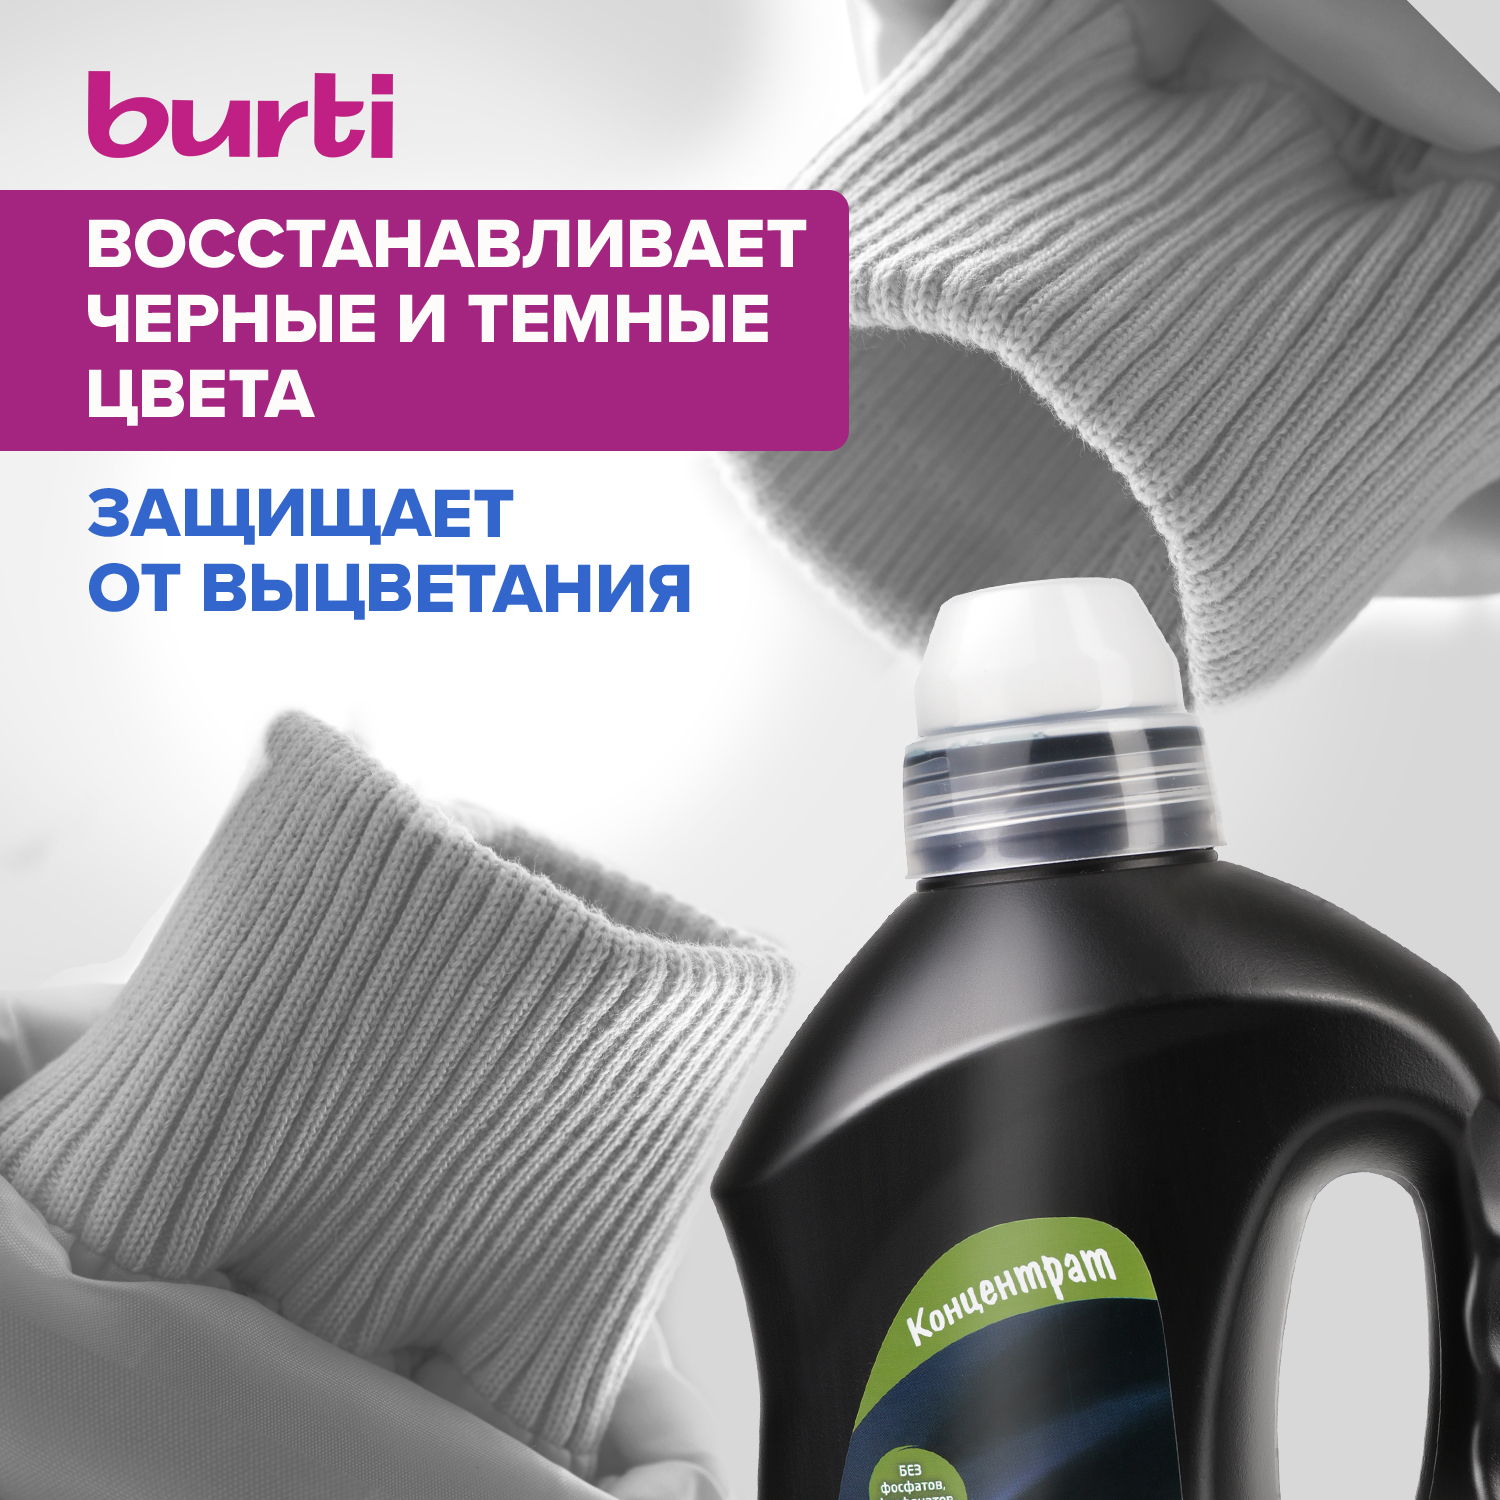 Жидкое средство Burti для стирки черного белья 1.5л - фото 3